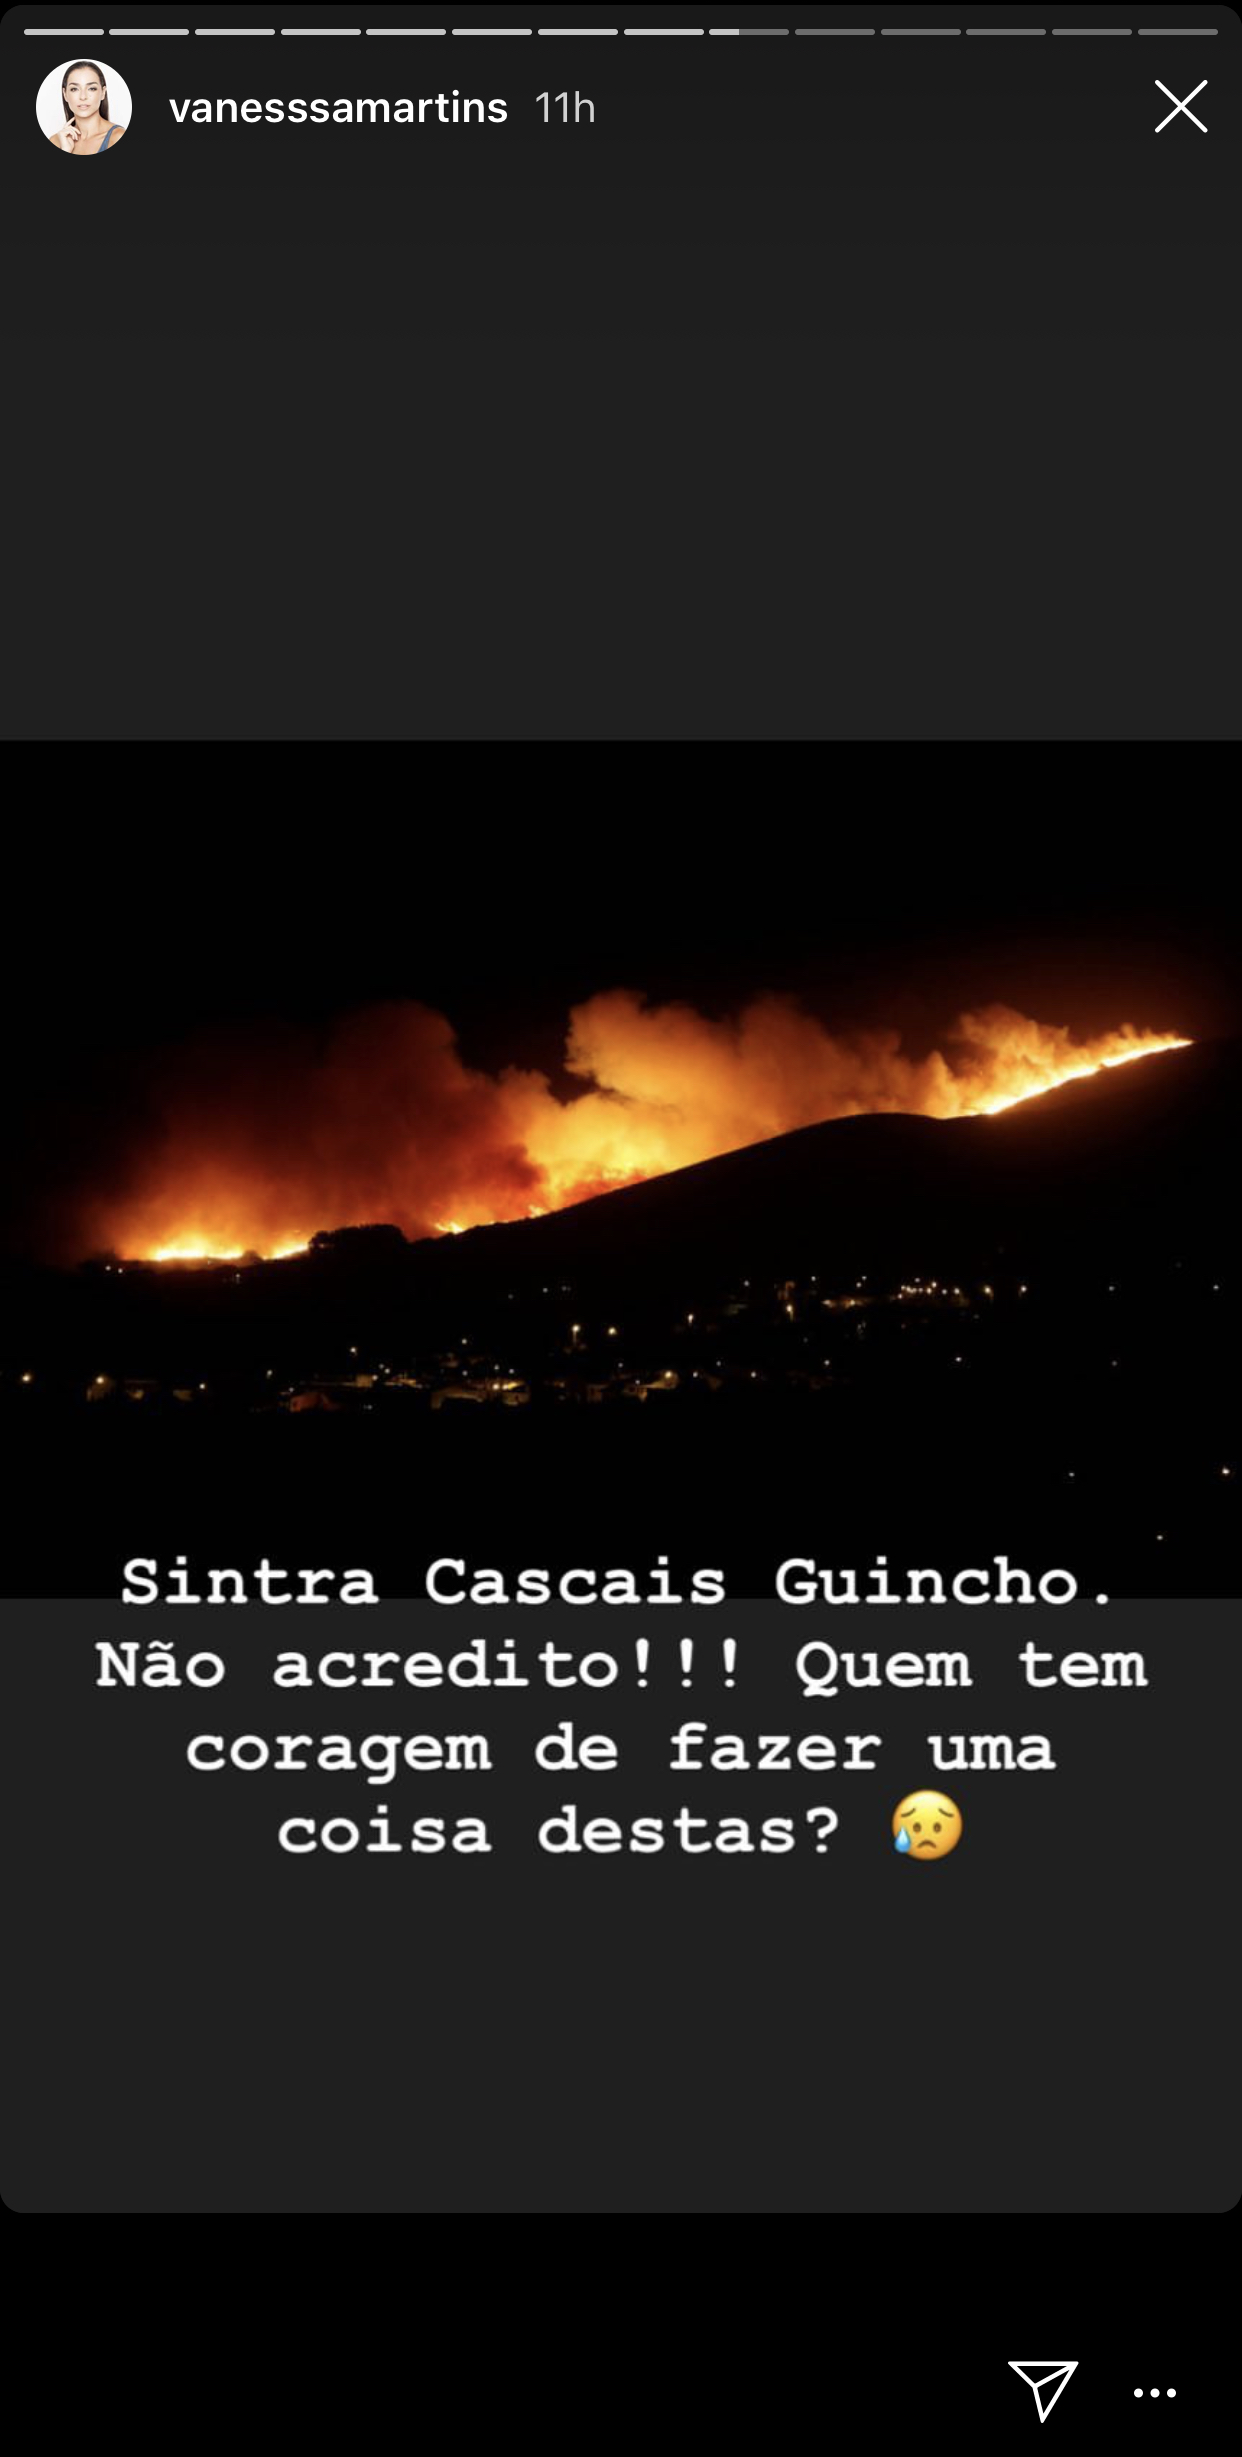 Vanessa Martins Incendio Sintra 1 Incêndio De Sintra. Teresa Guilherme Obrigada A Deixar A Sua Casa